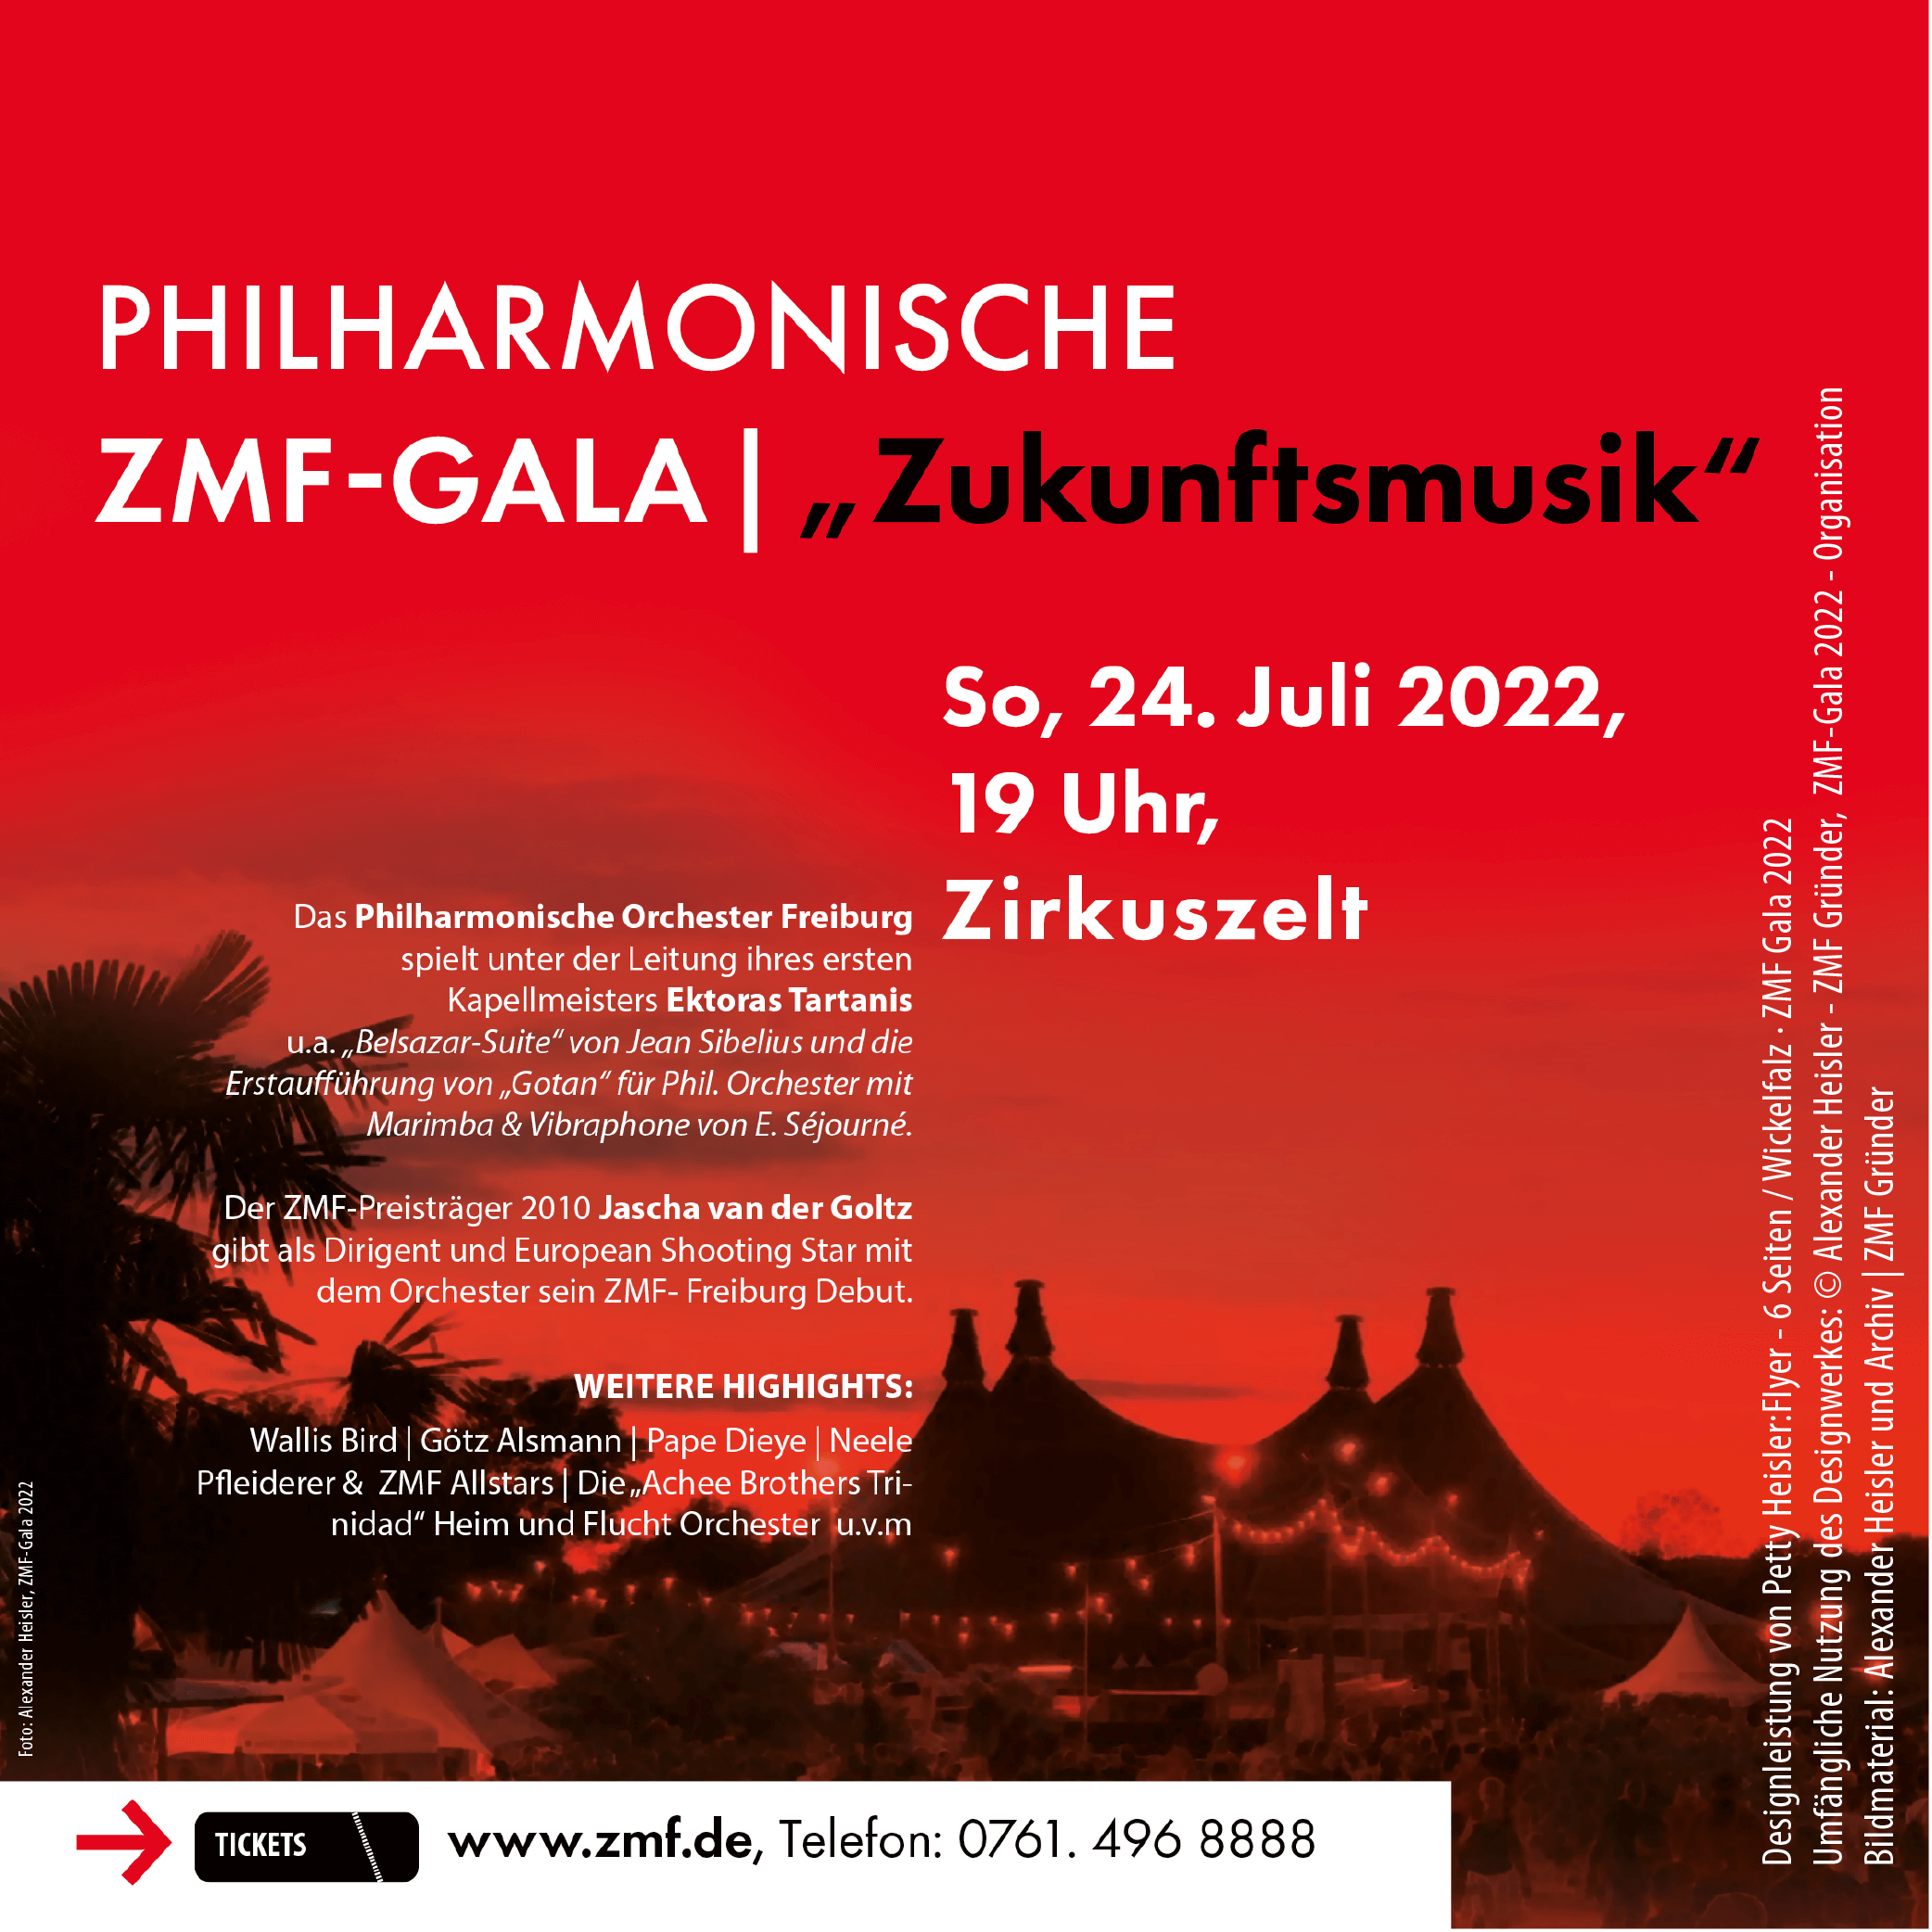 Philharmonische ZMF-GALA 2022 „Zukunftsmusik“